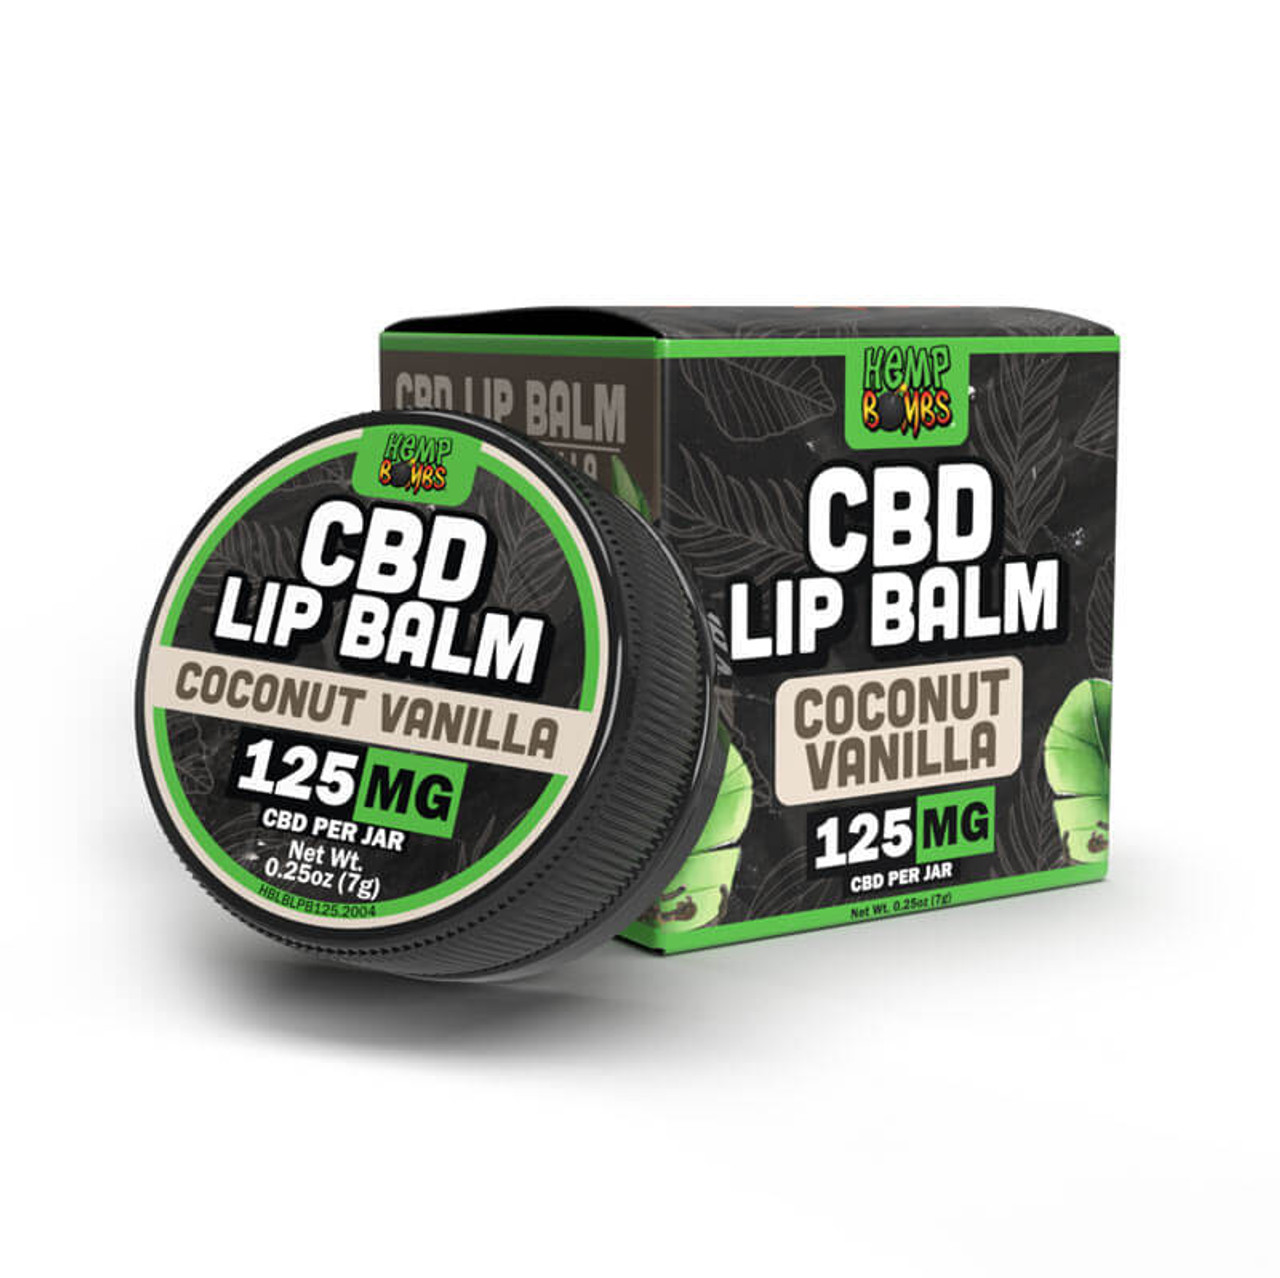 CBD Lip Balm by Hemp Bombs